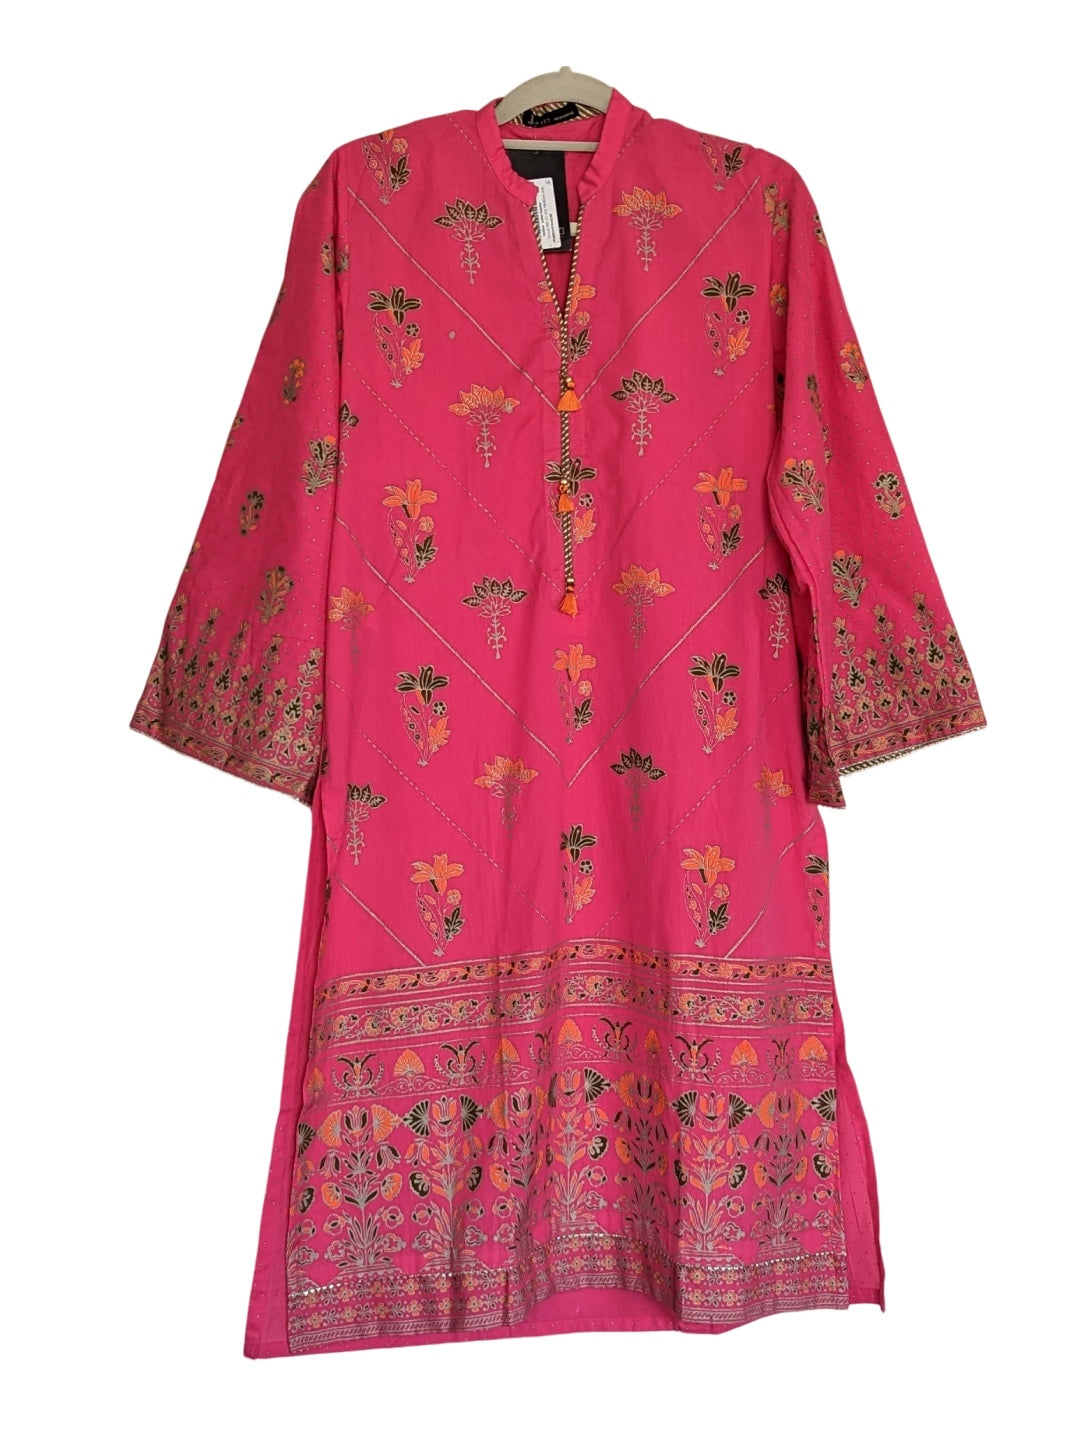 Print on Lawn Dress - Pakistani Dress - K110E1 | Fabricoz USA